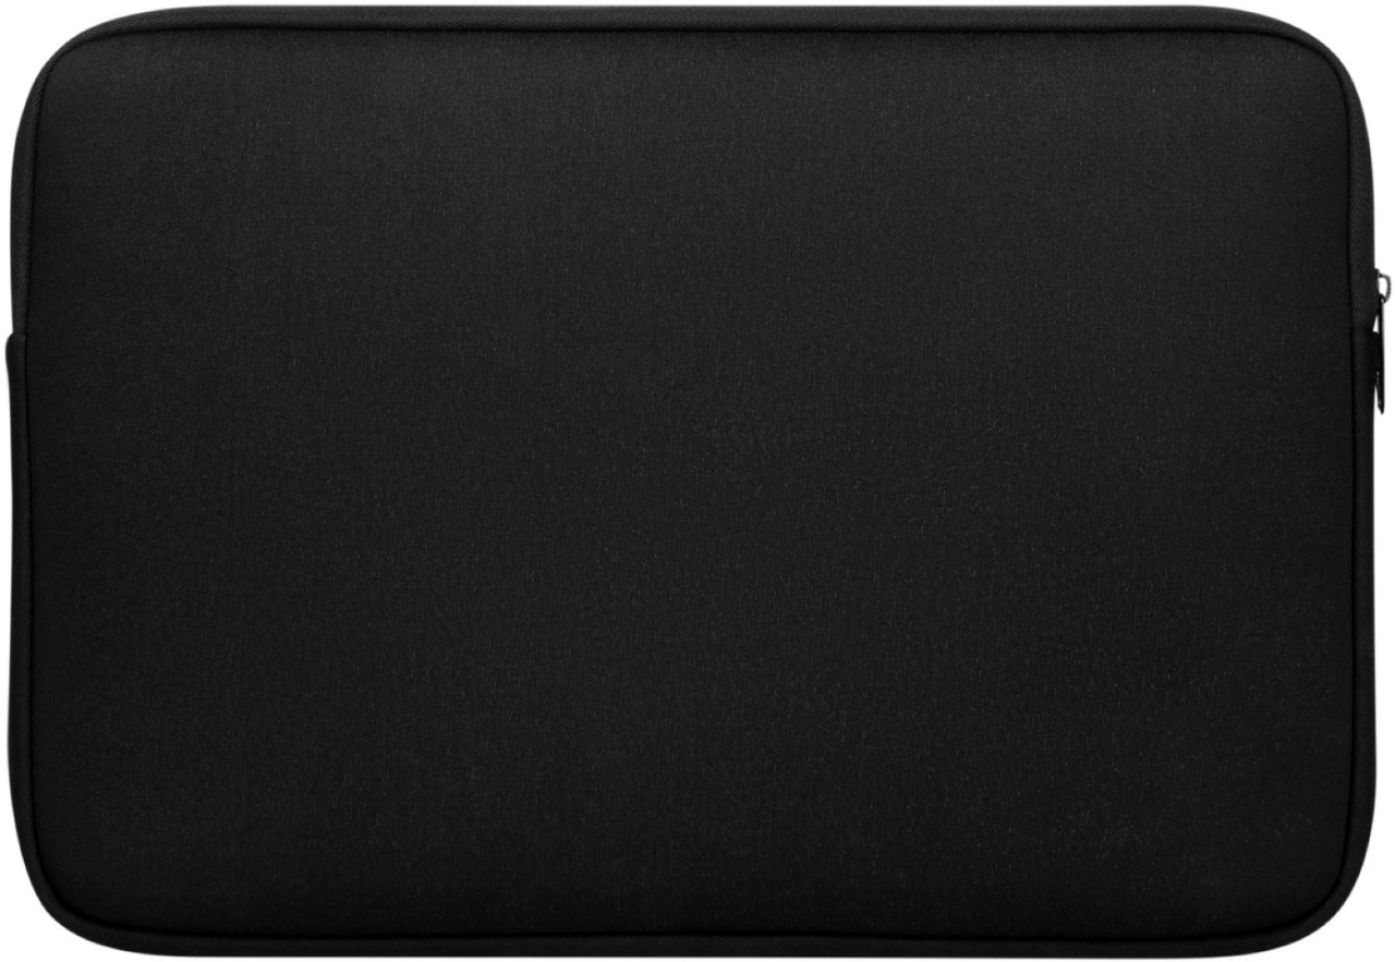 Targus - Bonafide Sleeve for 15.6" Laptop - Black